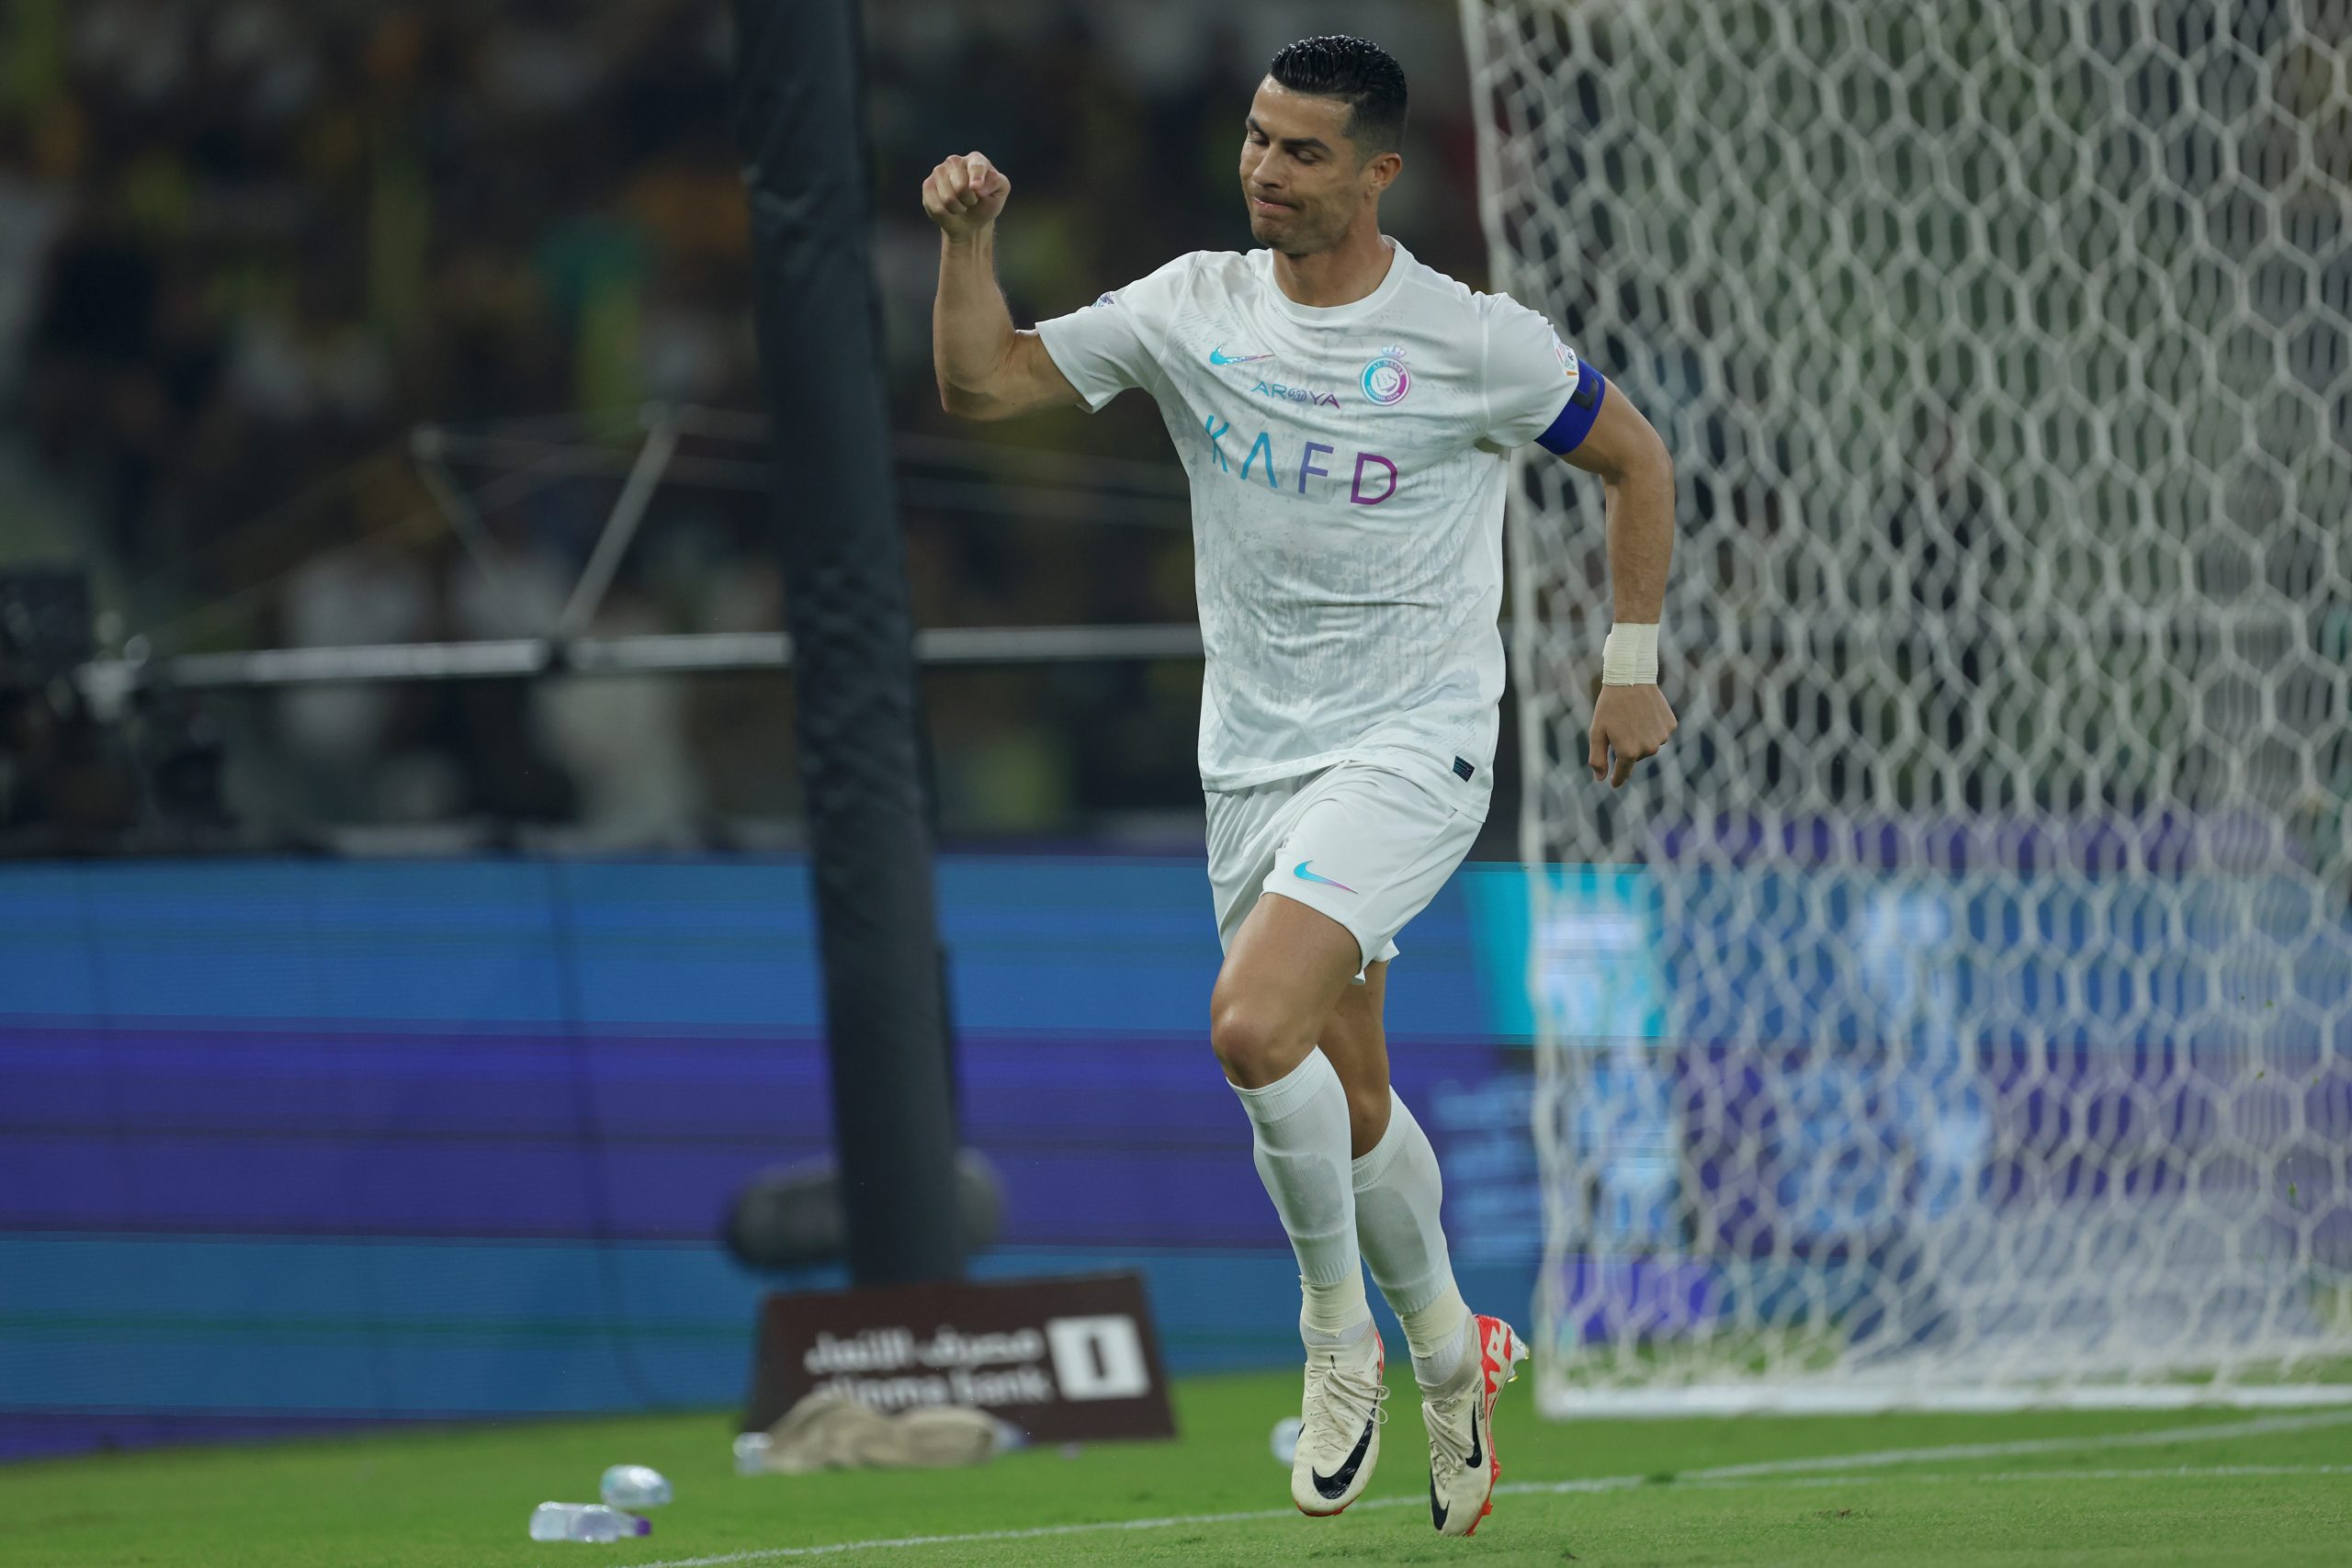 Cristiano Ronaldo comemora gol pelo Al-Nassr (Foto: Yasser Bakhsh/Getty Images)